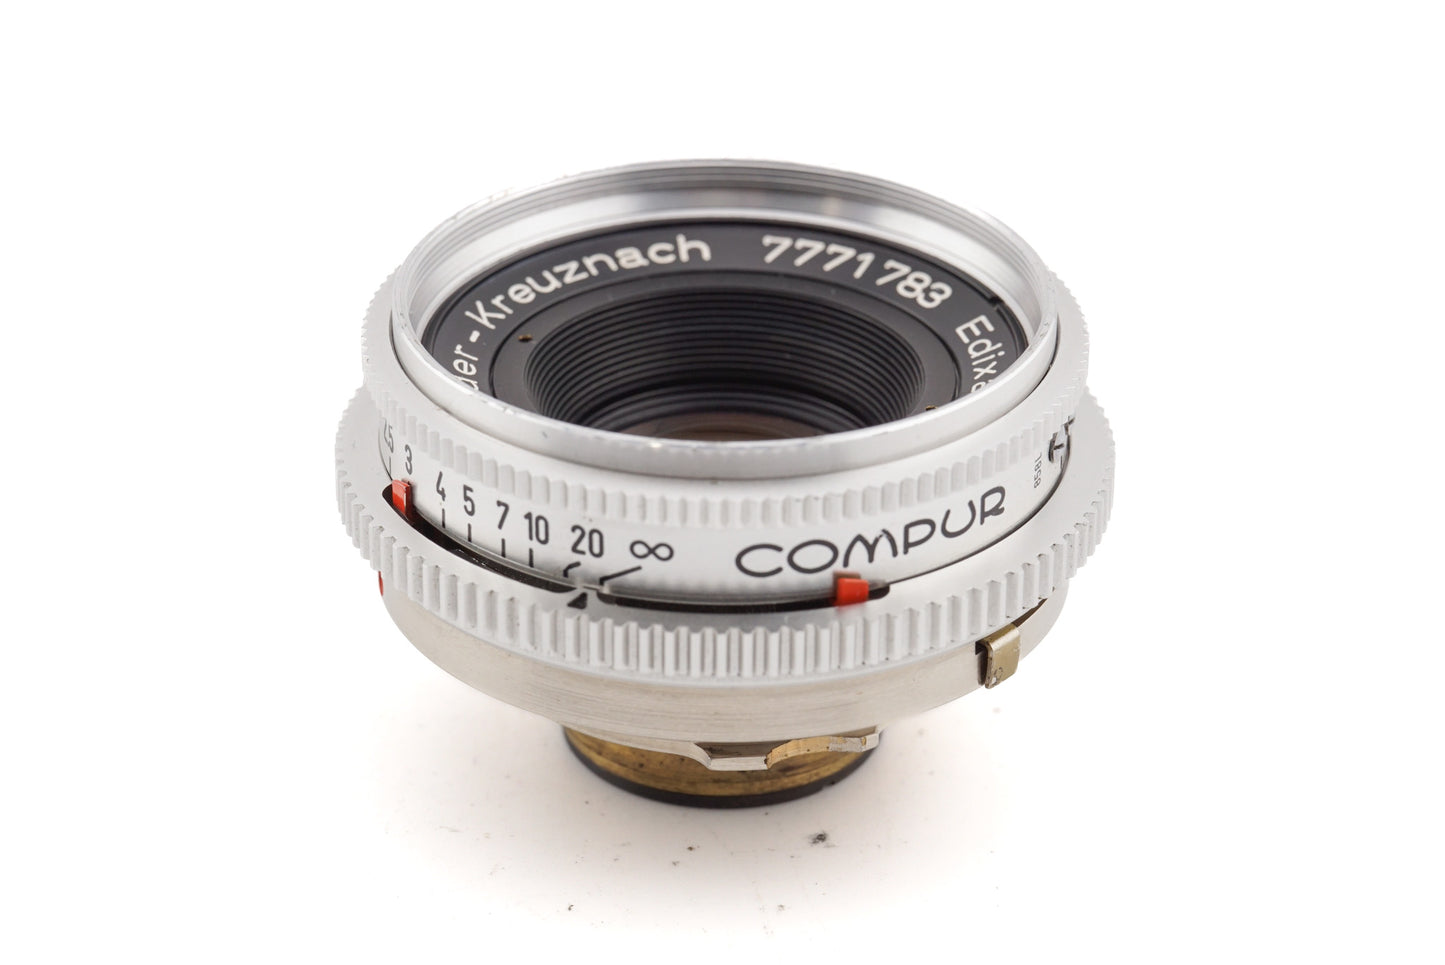 Schneider-Kreuznach 50mm f2.8 Edixa-Xenar - Lens